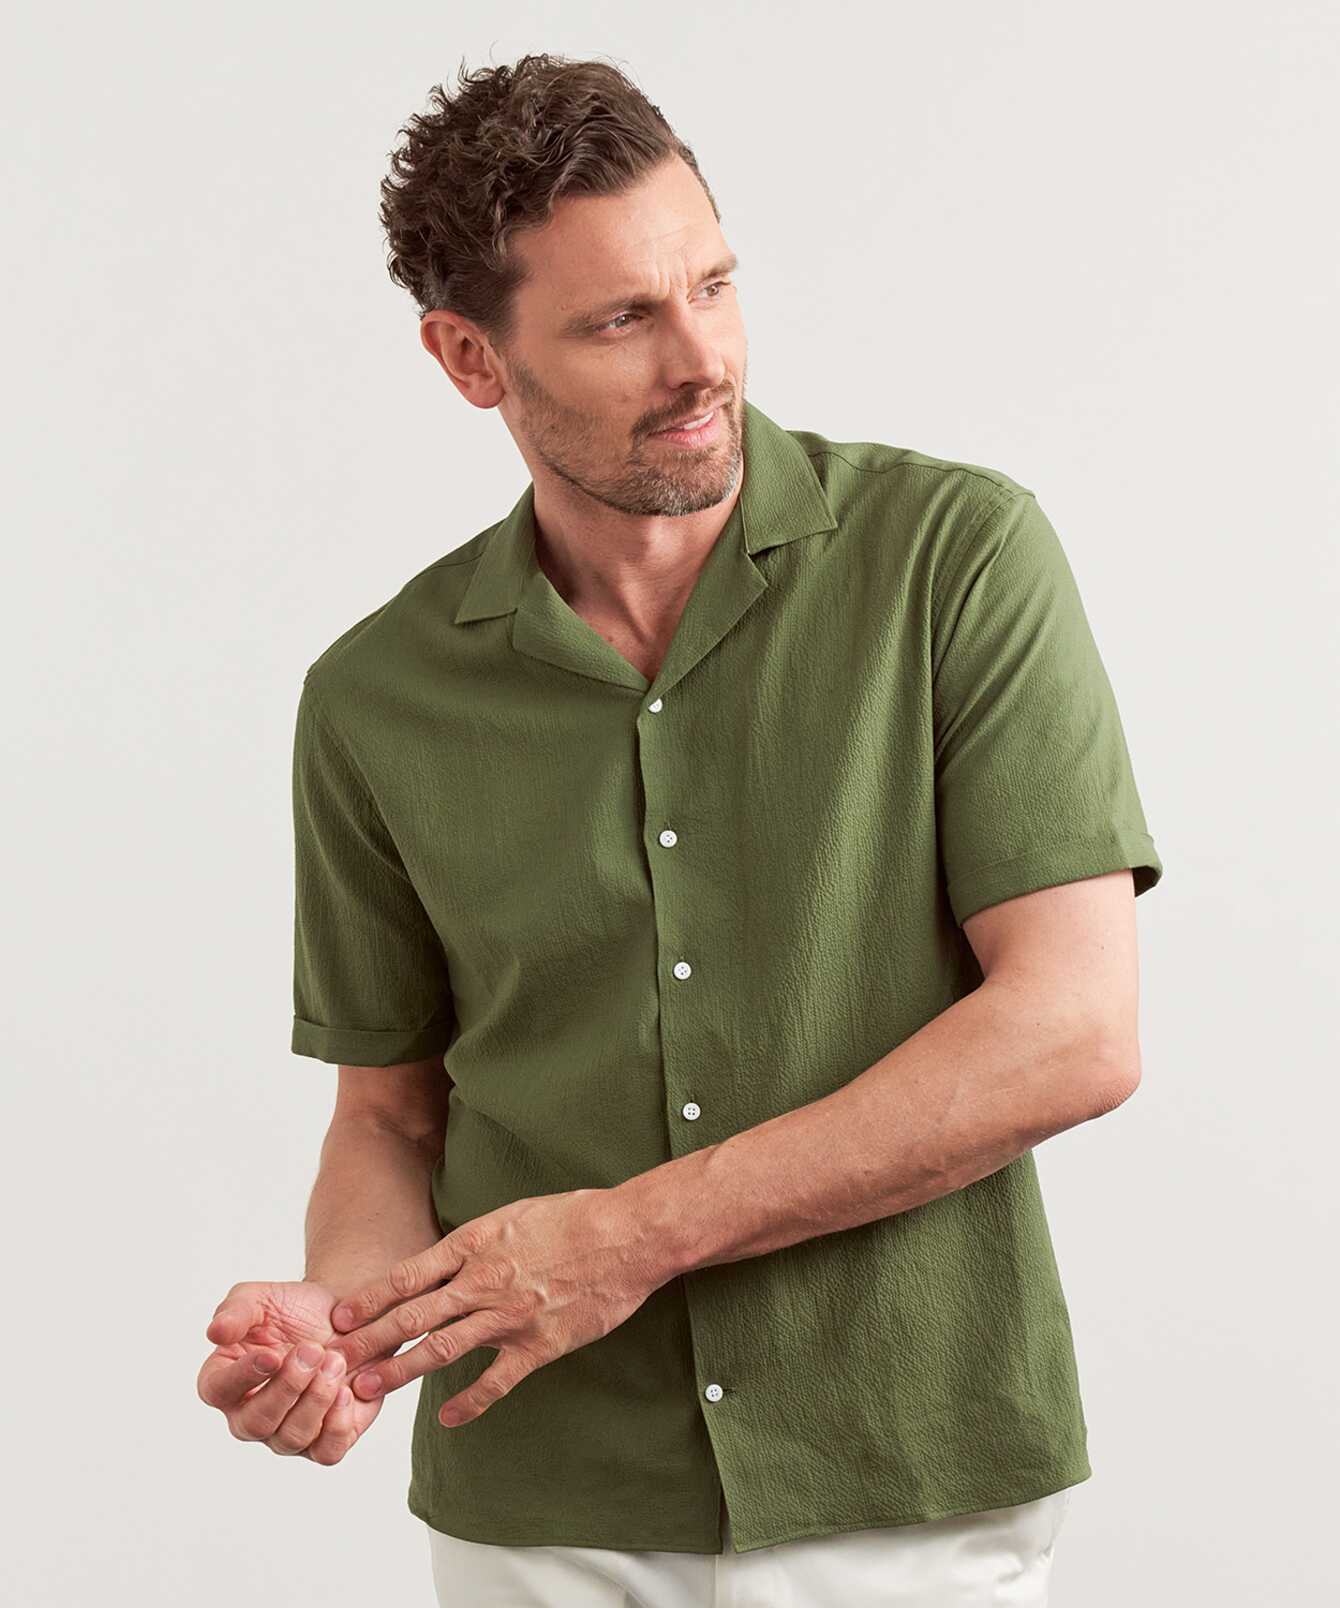 Shirt Belize Green Short Sleeve Seersucker Shirt The Shirt Factory